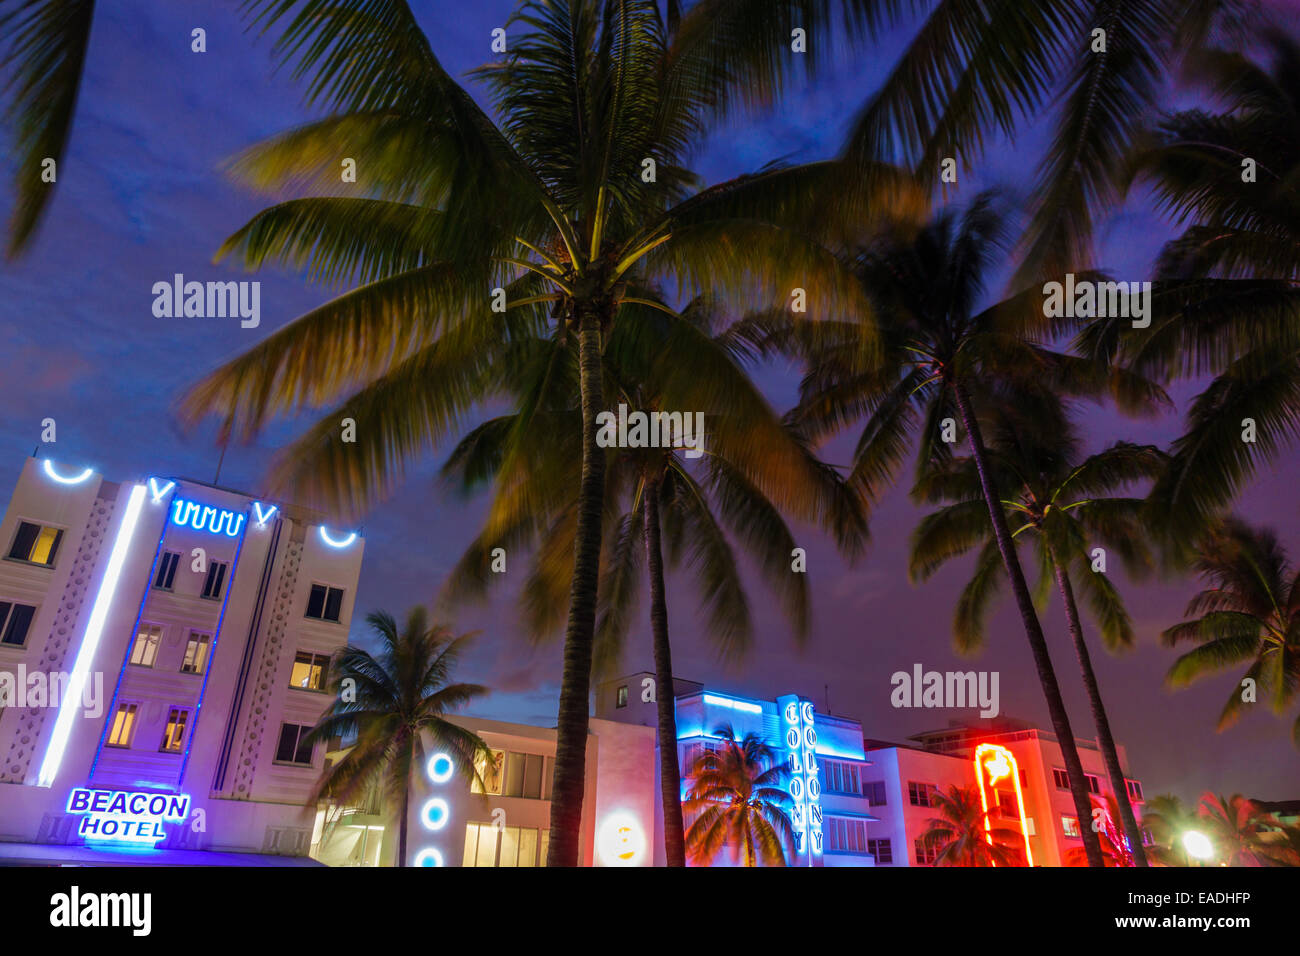 Miami Beach Florida,Ocean Drive,crépuscule,soirée,nuit,palmiers,Beacon,Colony,hôtel,bâtiments,néon,FL140930014 Banque D'Images